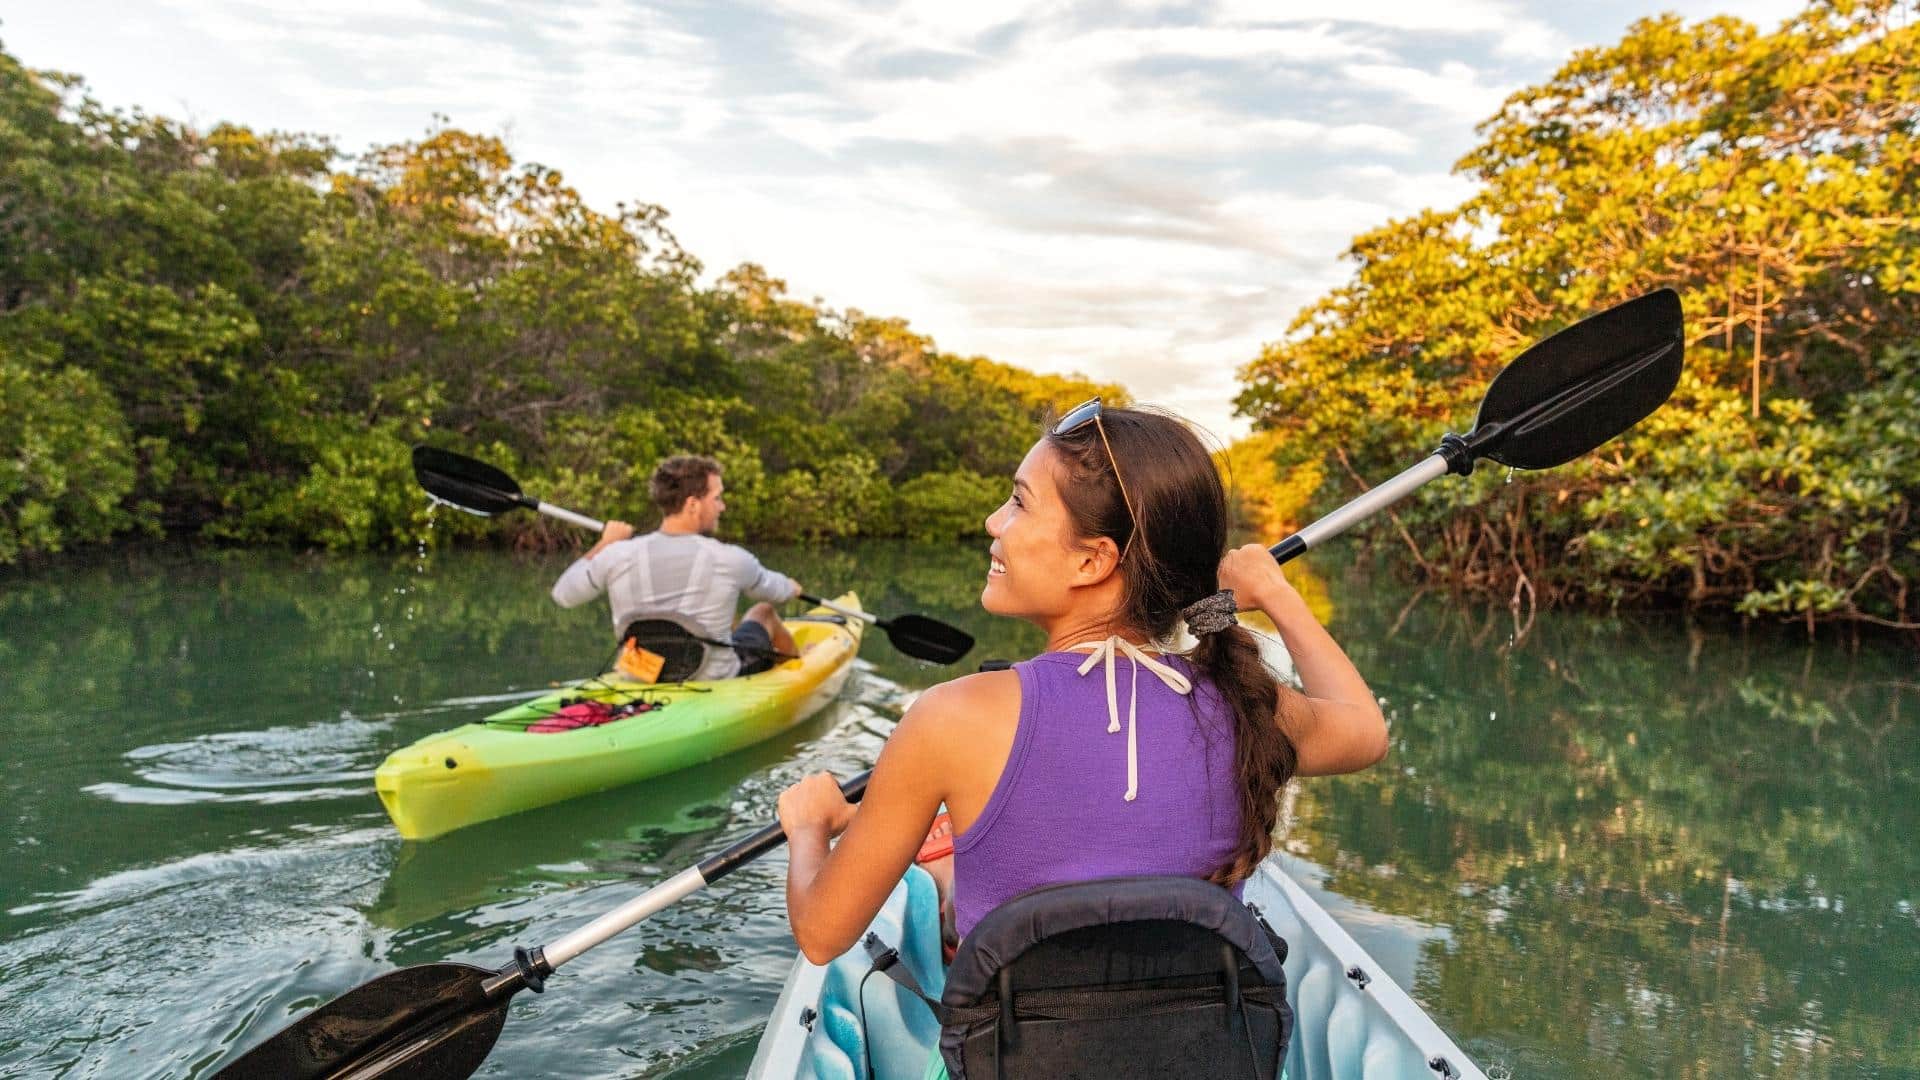 Brevard Zoo Kayaking Experience - 3